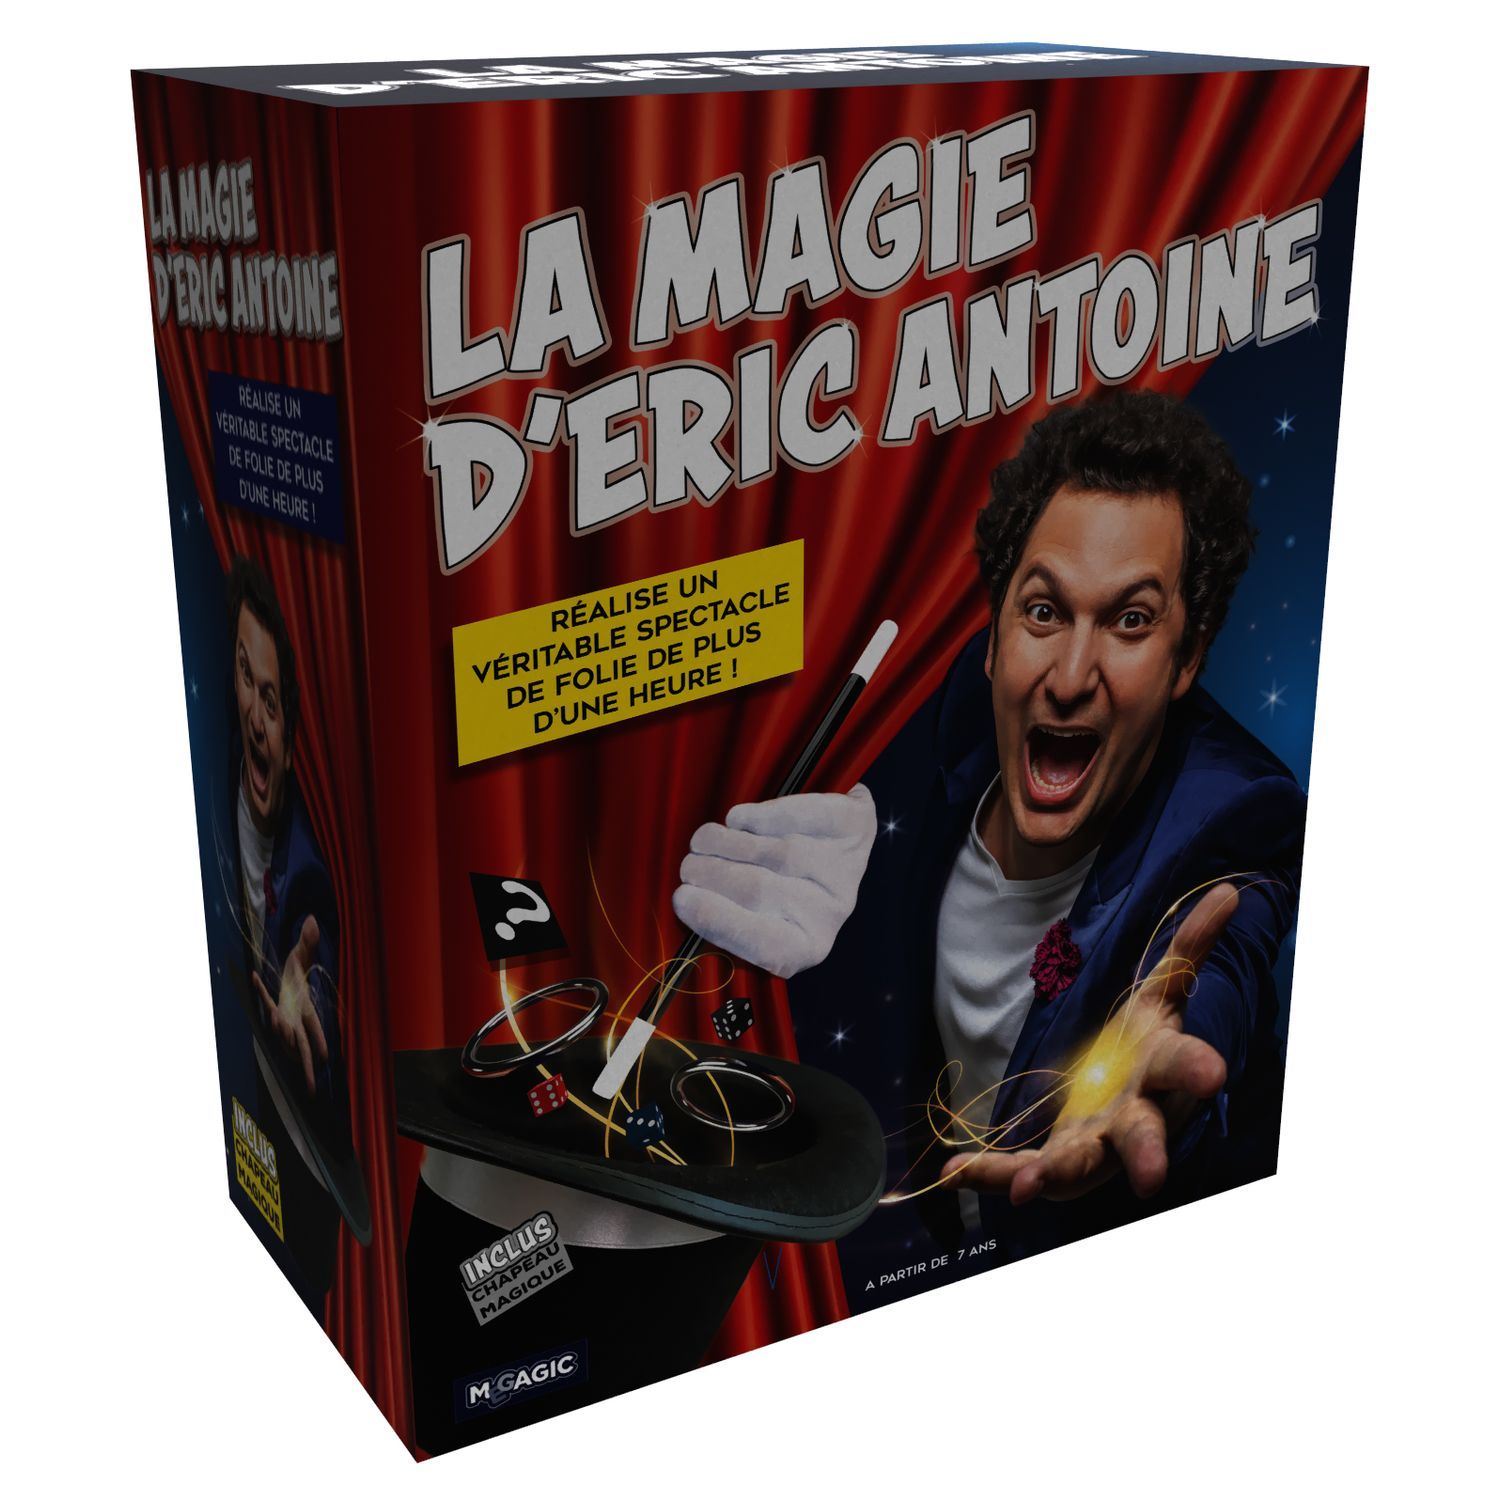 MEGAGIC Coffret spectacle - La magie d'Eric-Antoine pas cher 